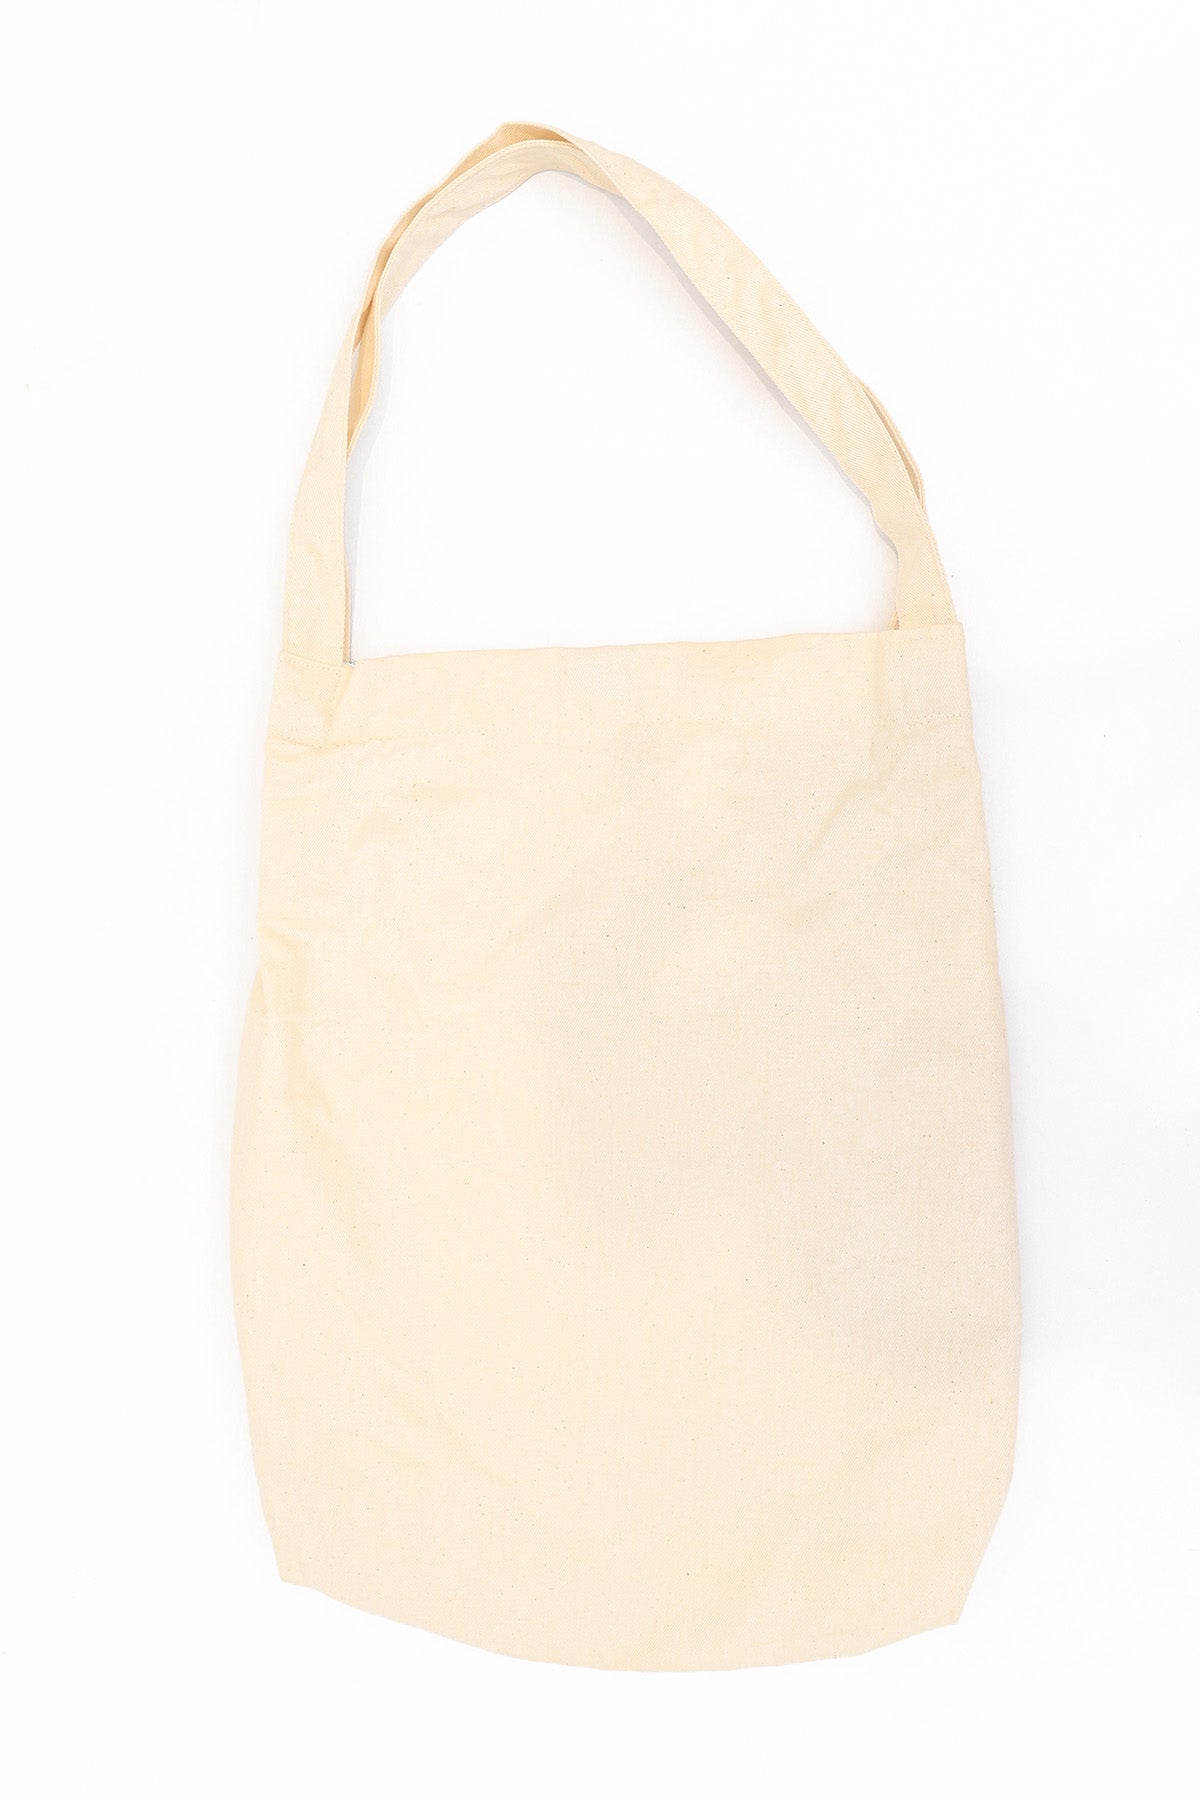 Modano Women's Casual Tote Bag